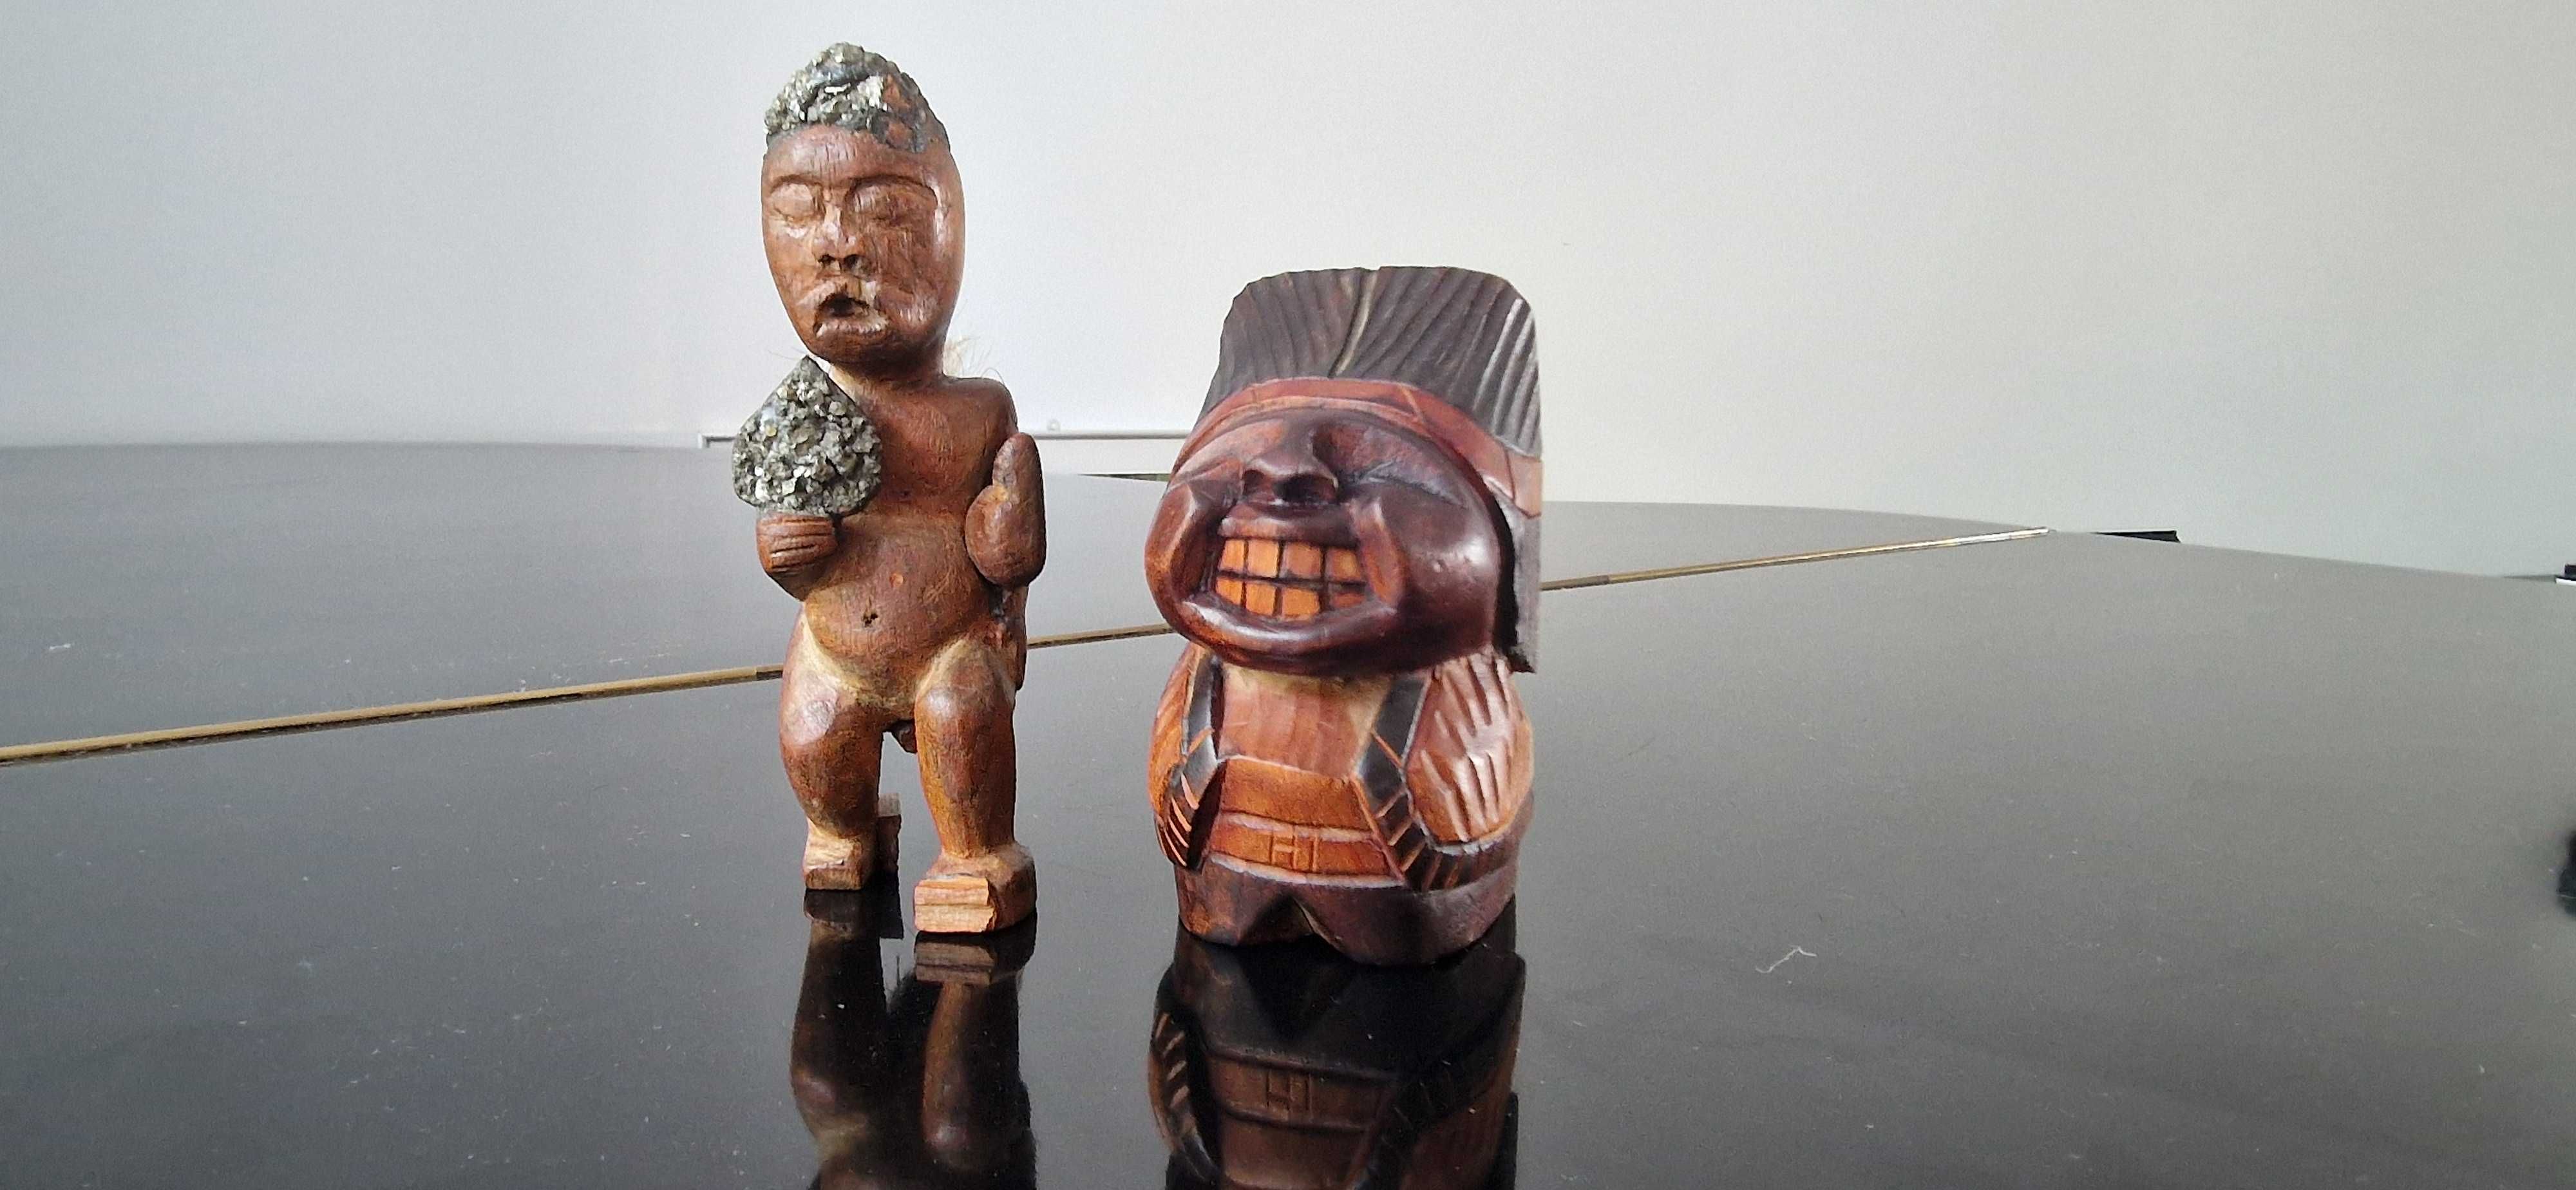 Dwie rzezby figury z drewna Afryka i Chile rekodzielo sztuka rdzenna